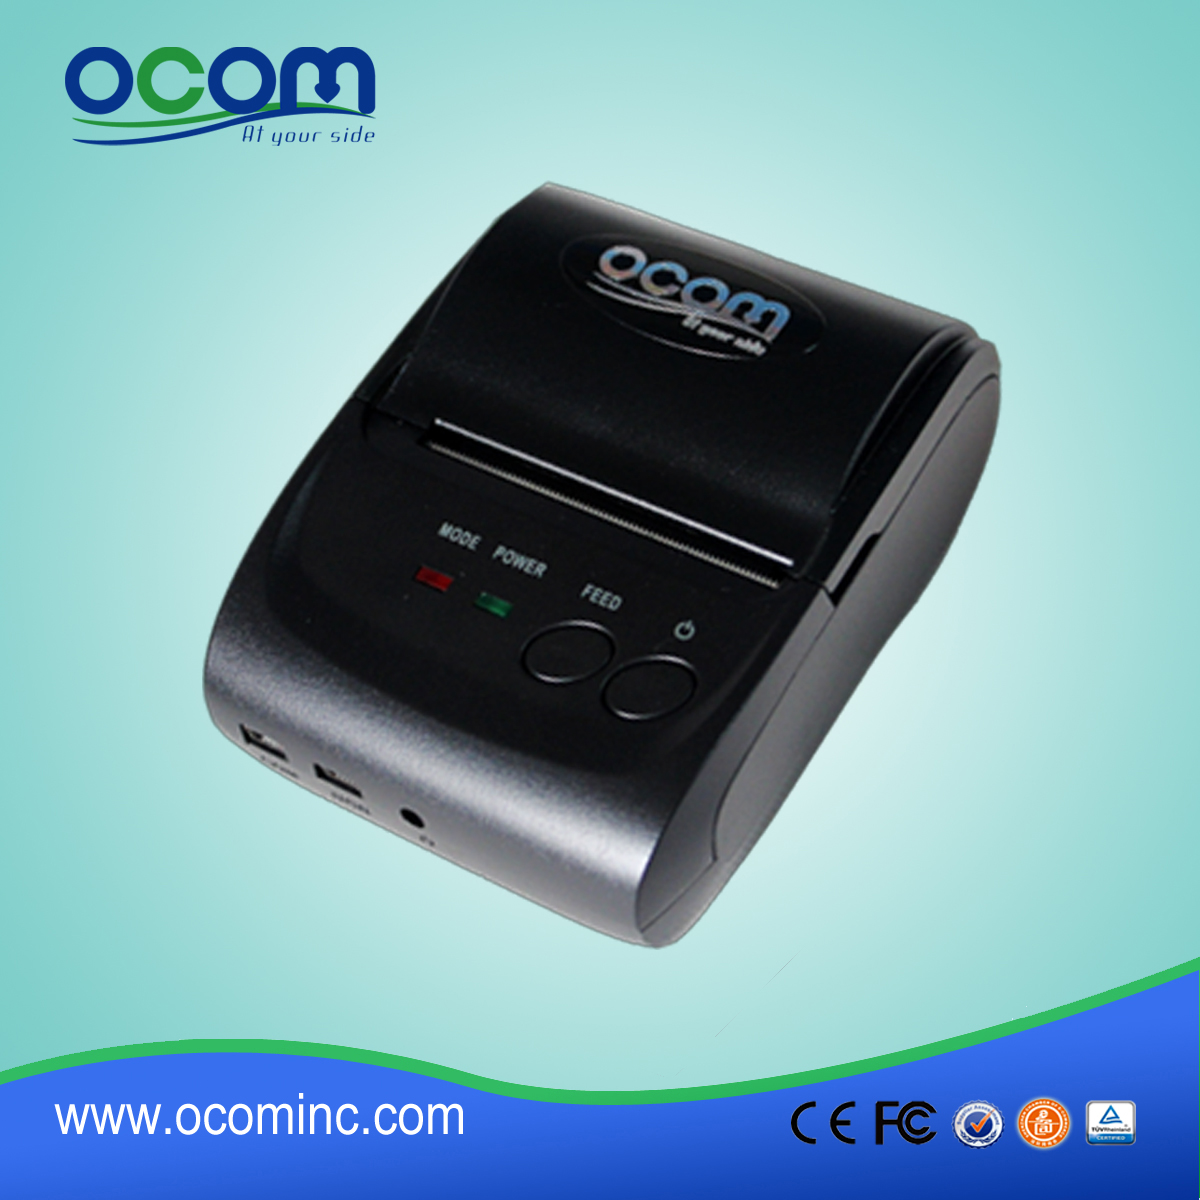 OCPP-M05: موثوق بها الروبوت الطابعة نقاط البيع الطابعة الحرارية، ورمز الاستجابة السريعة طابعة حرارية